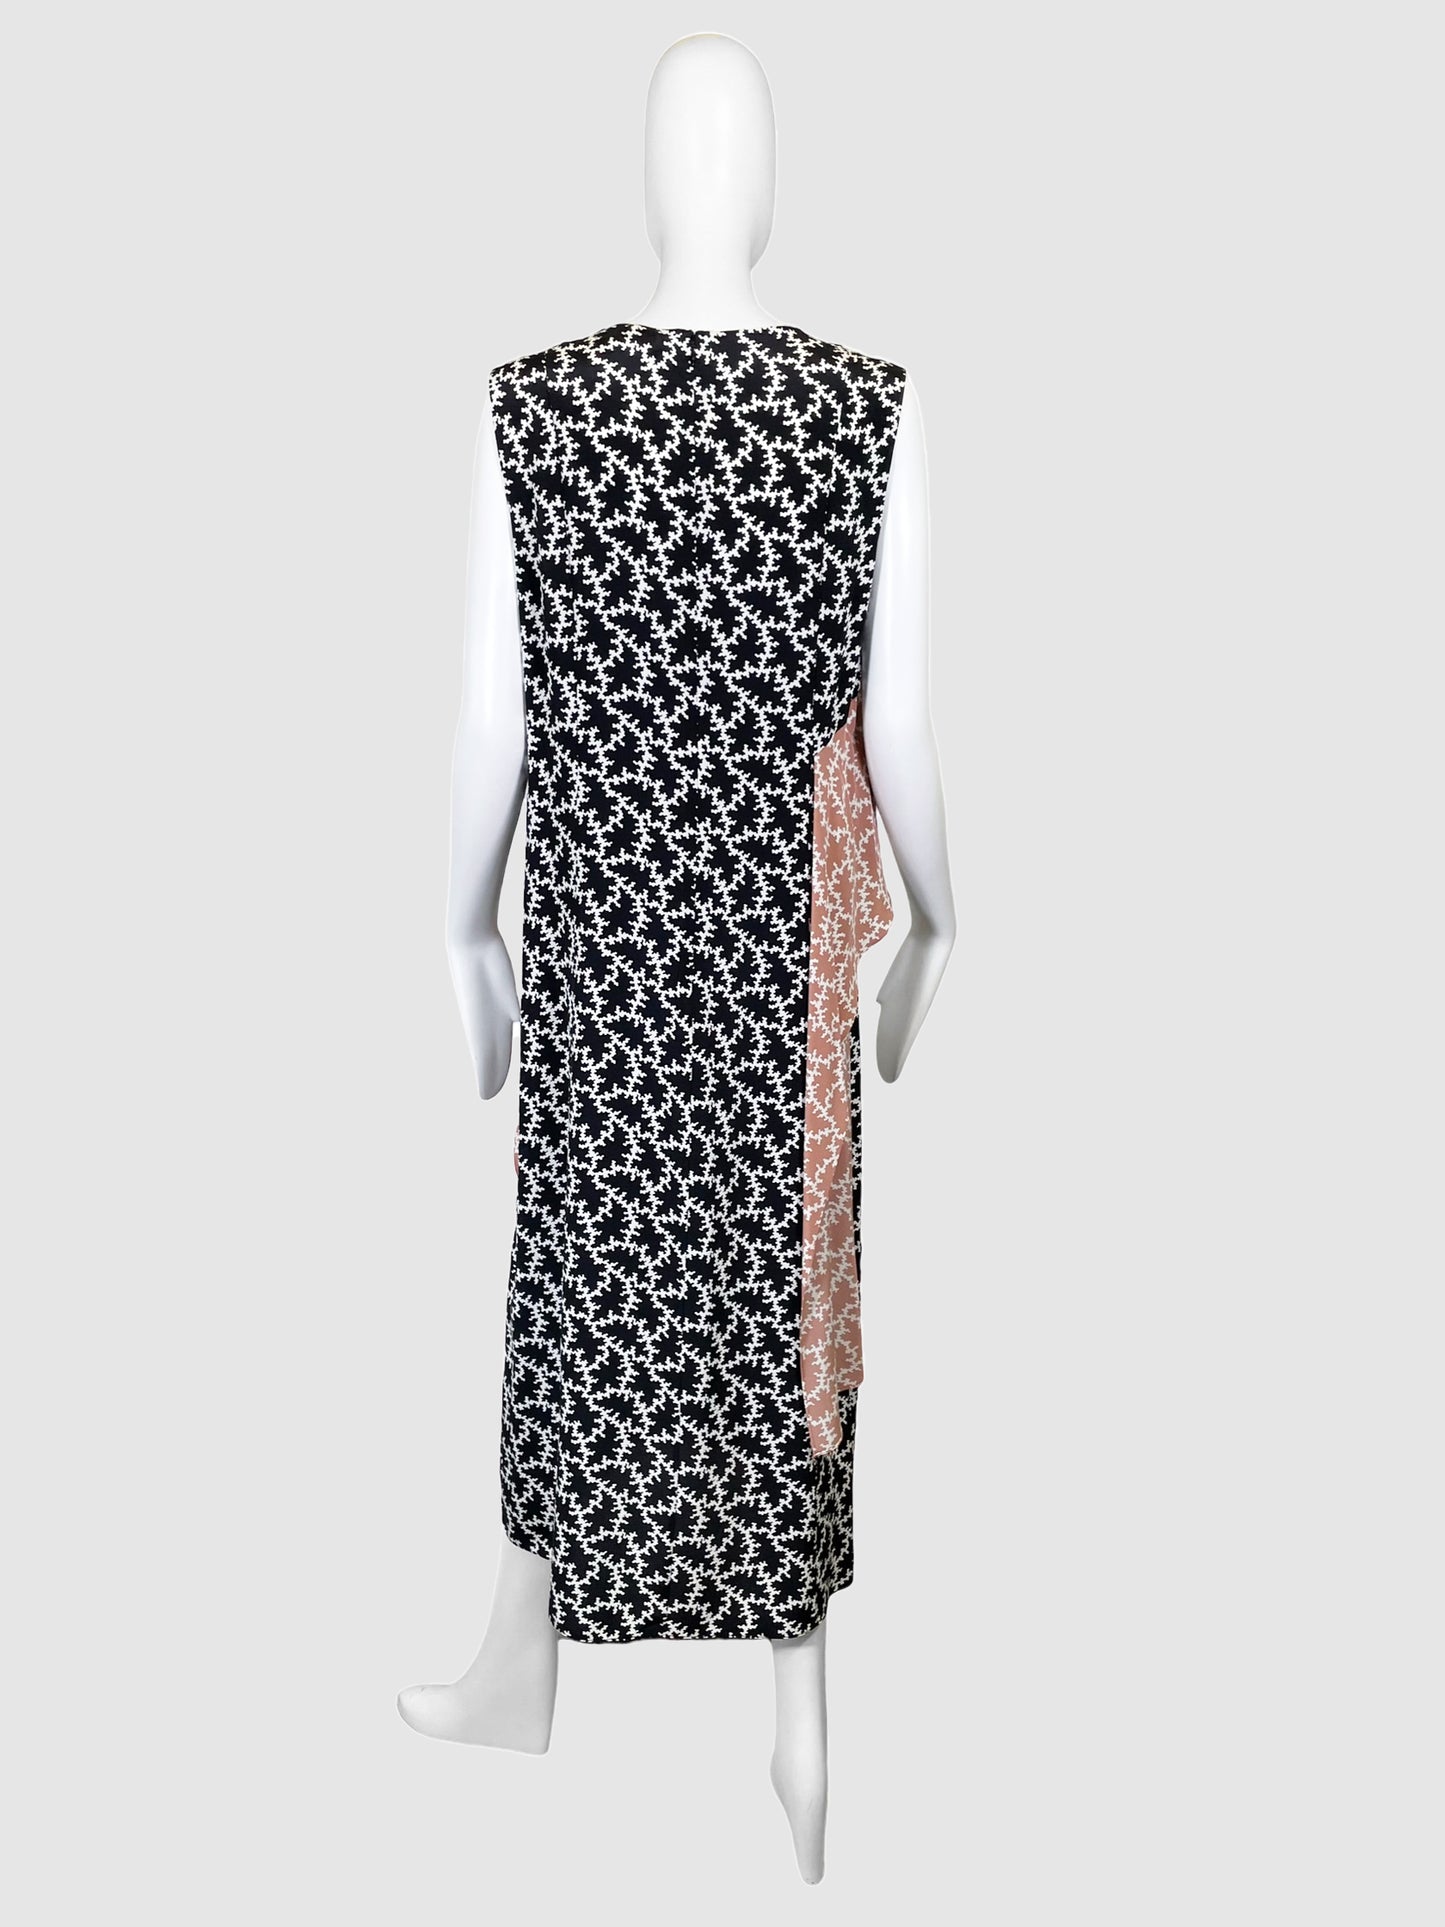 Diane Von Furstenberg Printed Contrast Midi Dress - Size 14